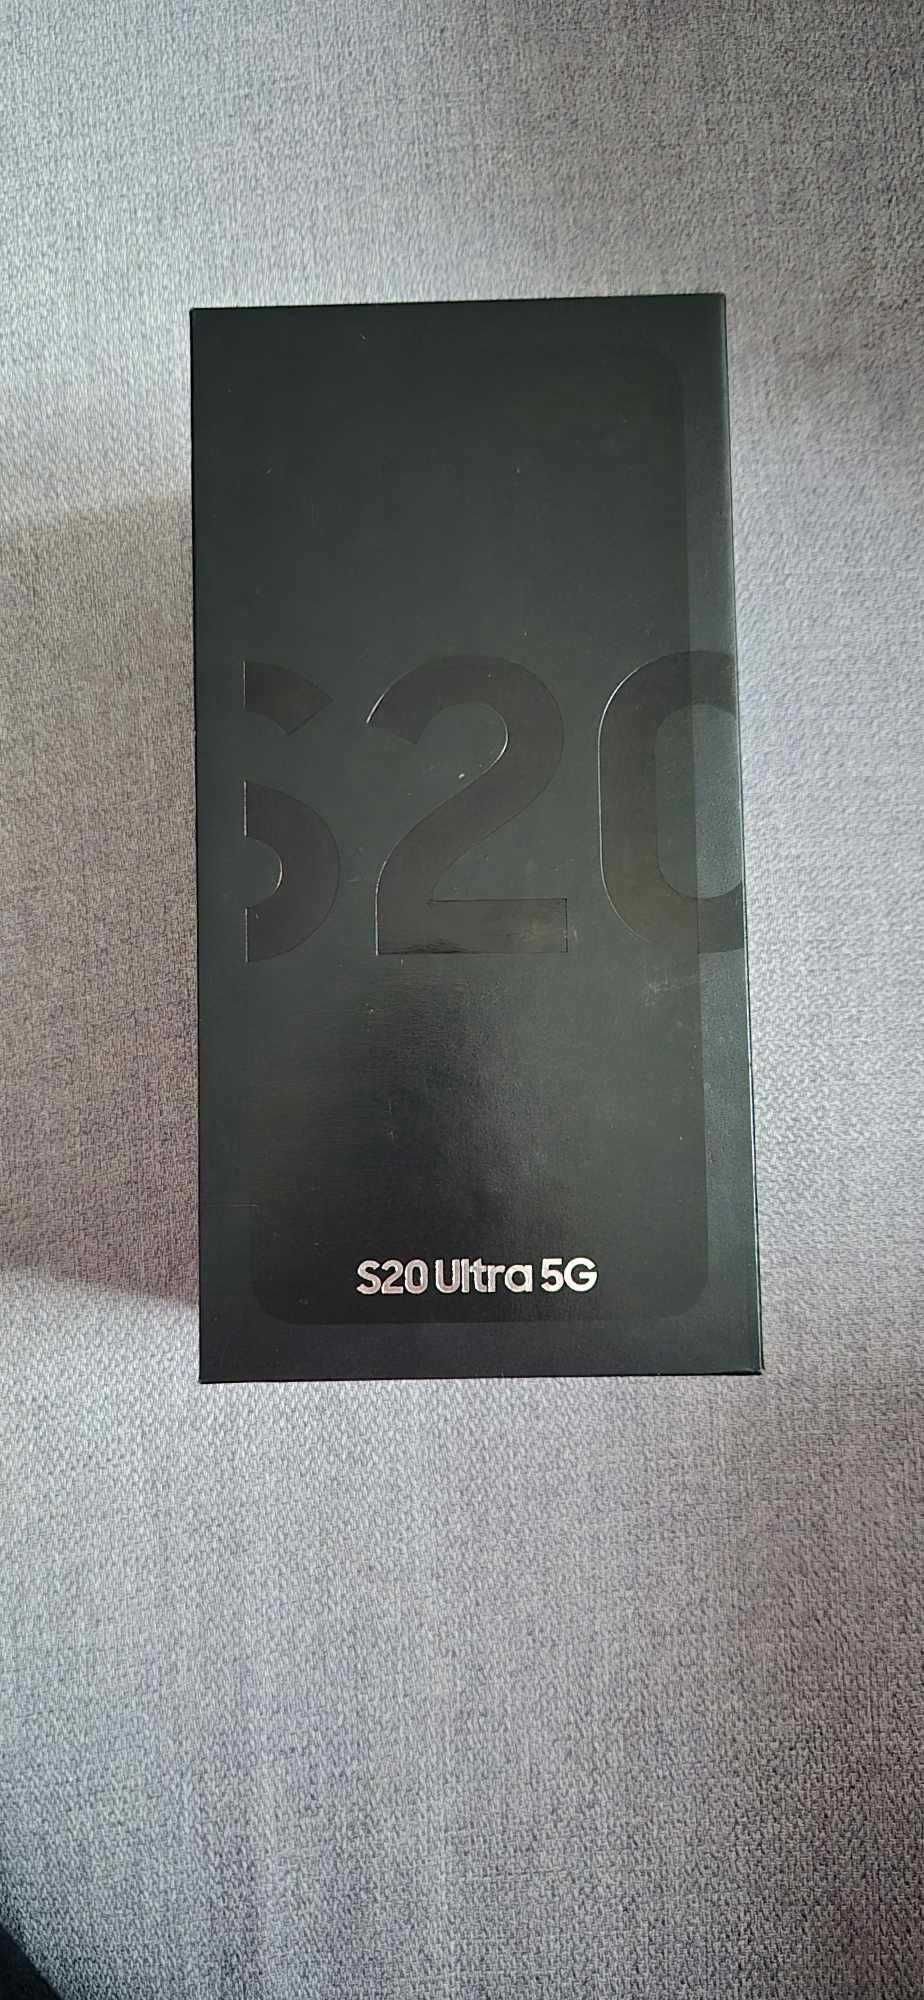 Samsung Galaxy S20 Ultra 12/128